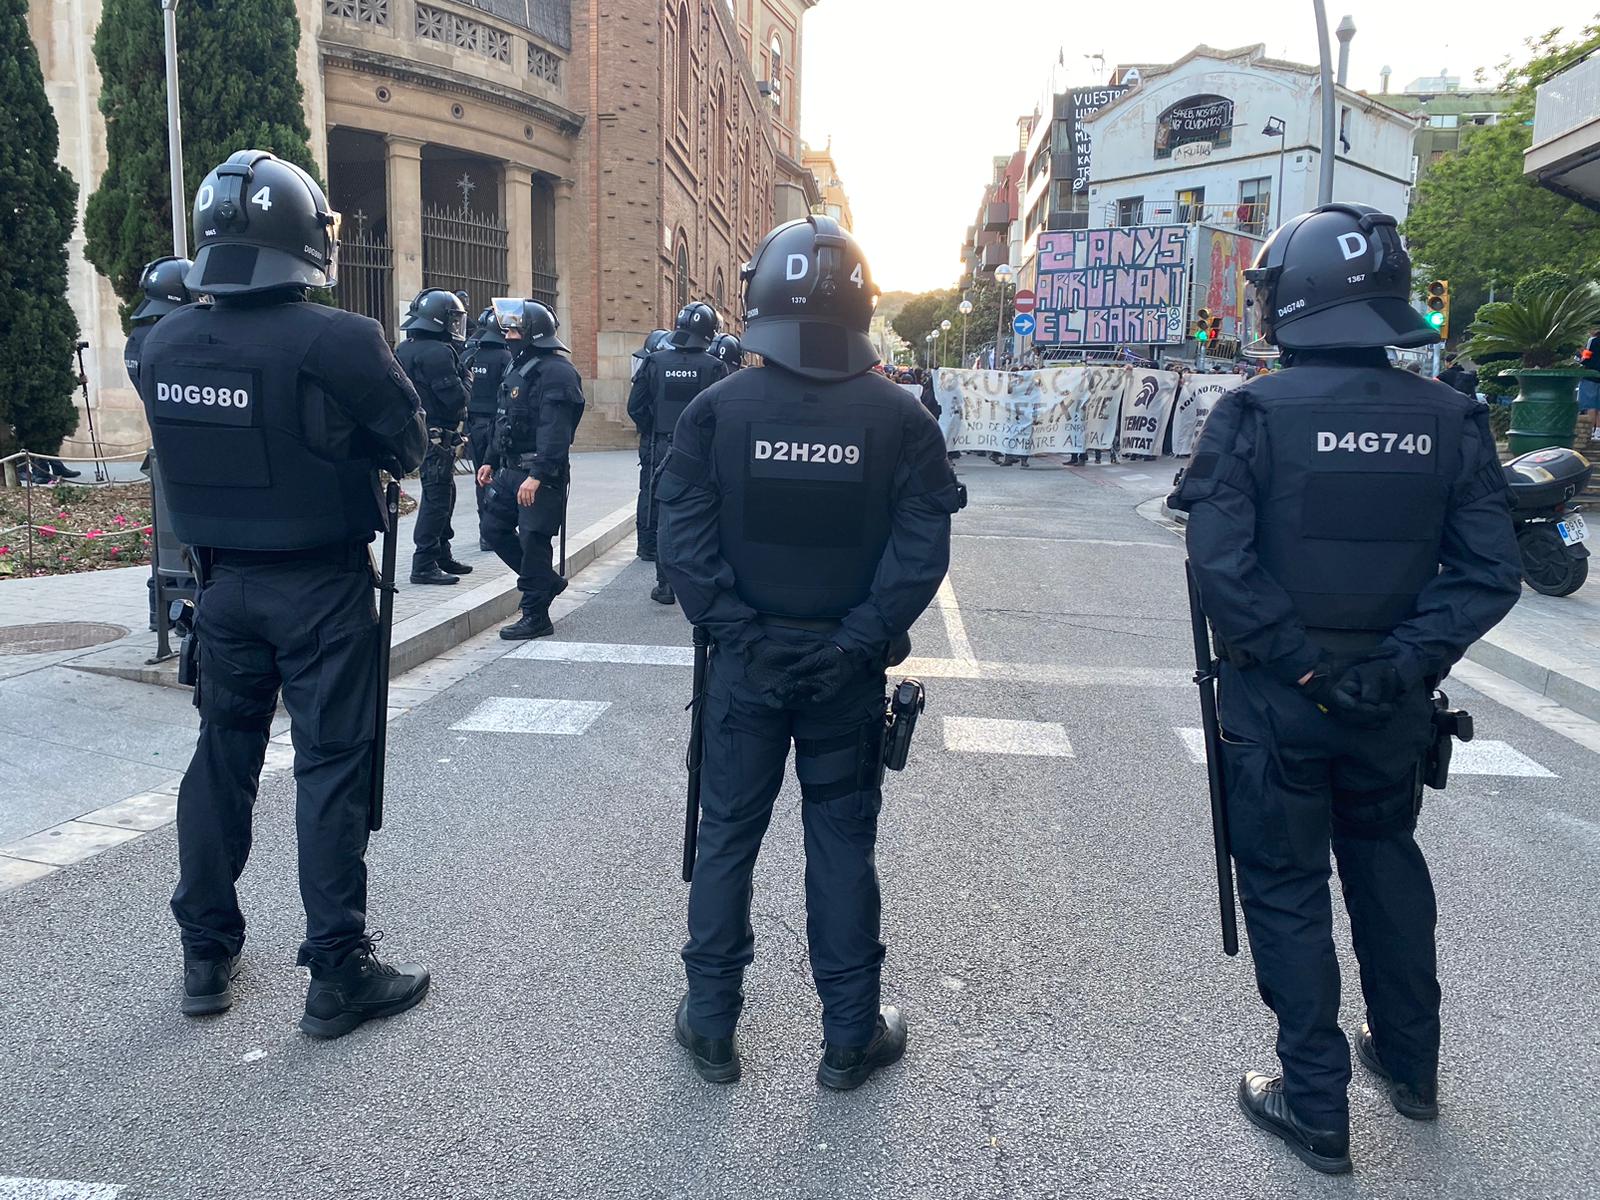 La part alta de Barcelona torna a viure hores de tensió entre okupes i antiokupes